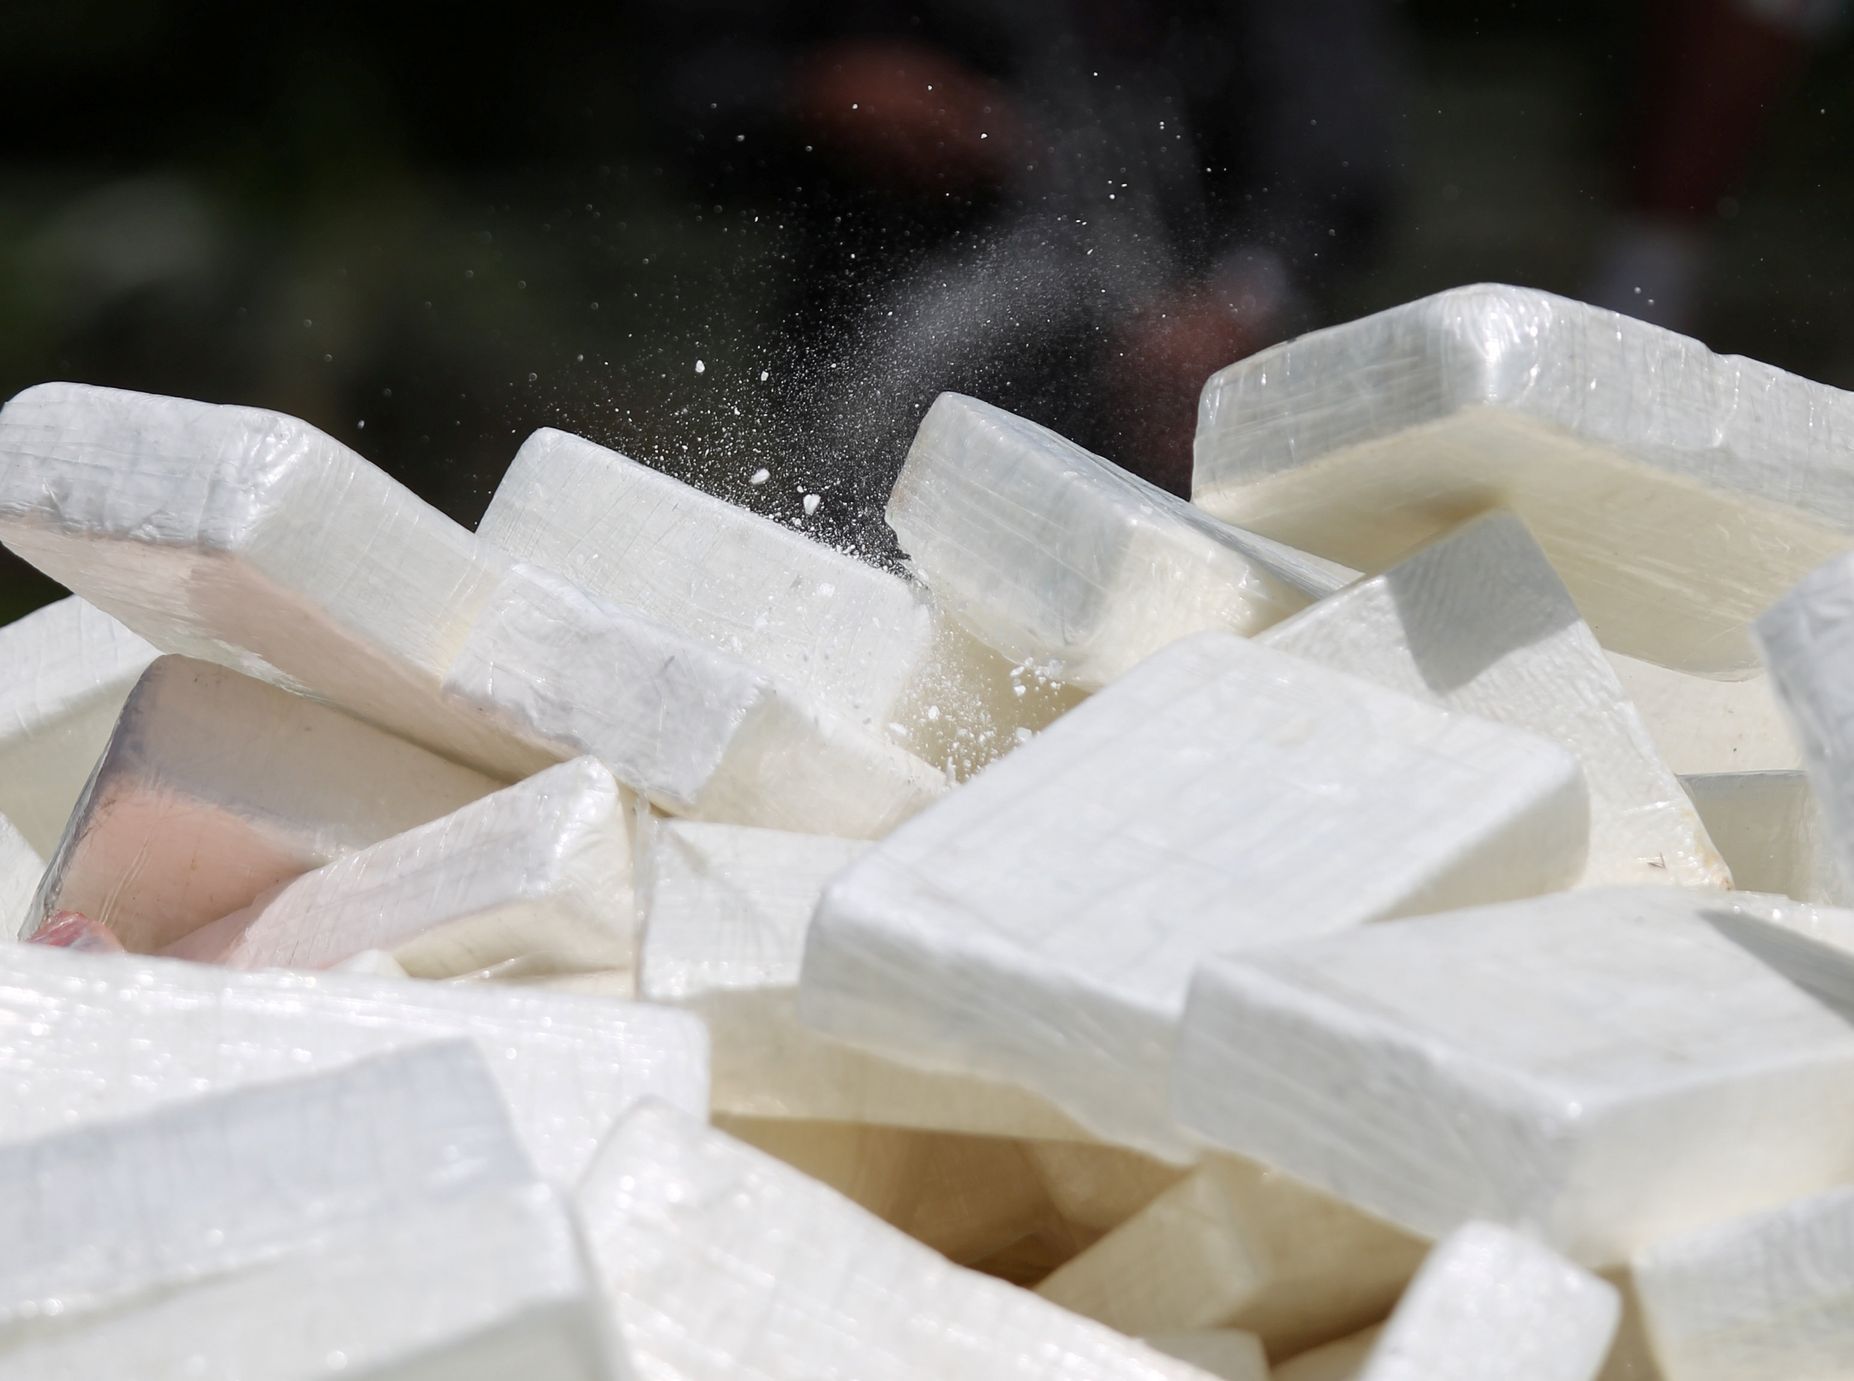 L’Atlantique blanchissait des colis avec de la cocaïne pure en France, les autorités en avaient déjà 763 kilogrammes